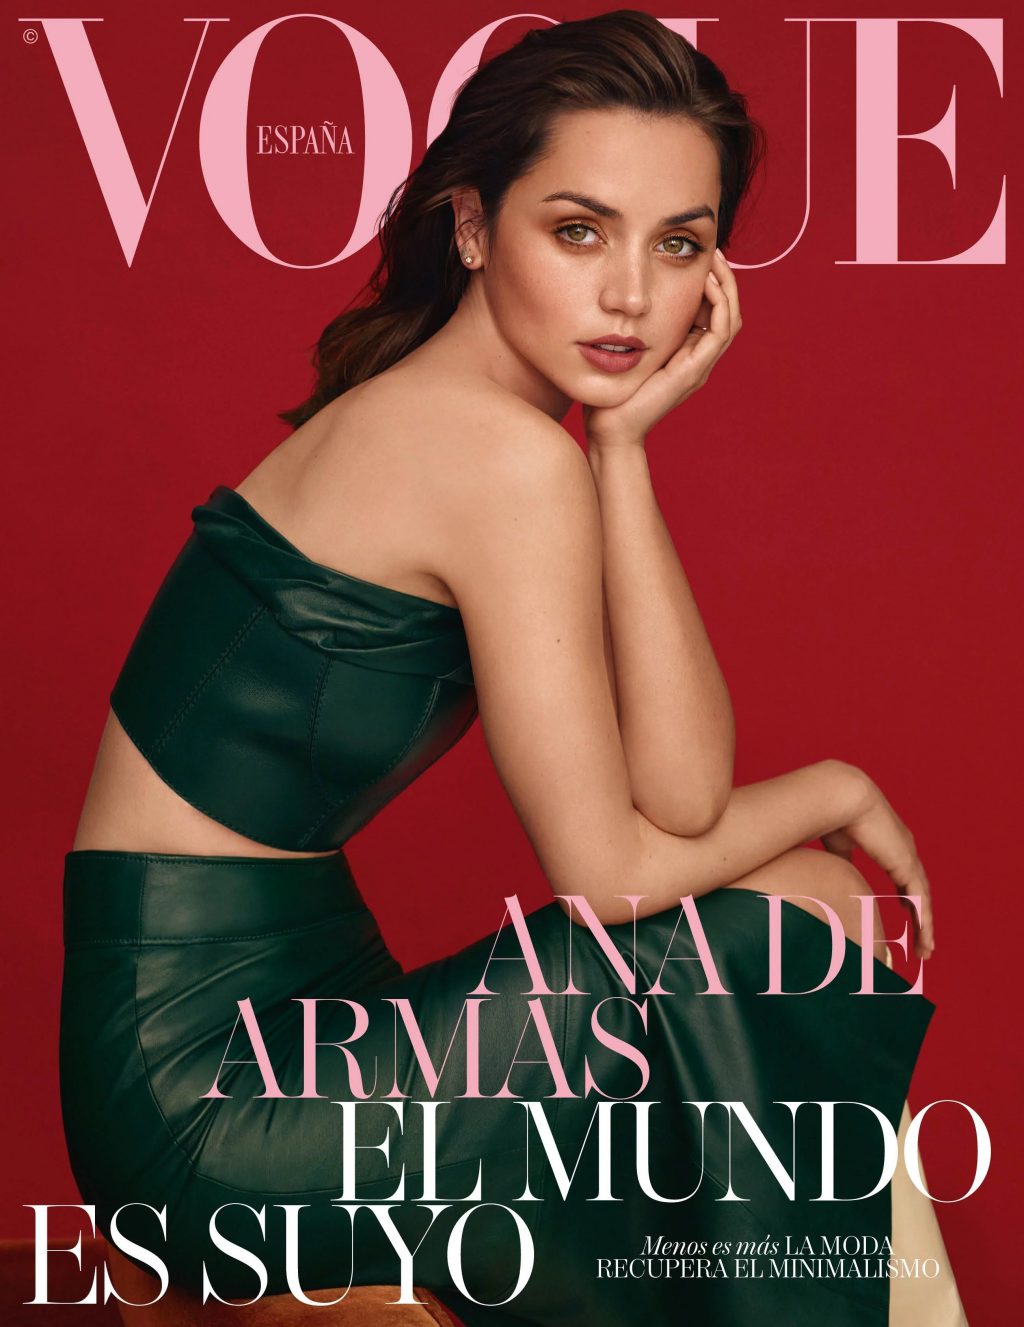 Ana de Armas Sexy – Vogue Spain April 2020 Issue (23 Photos)